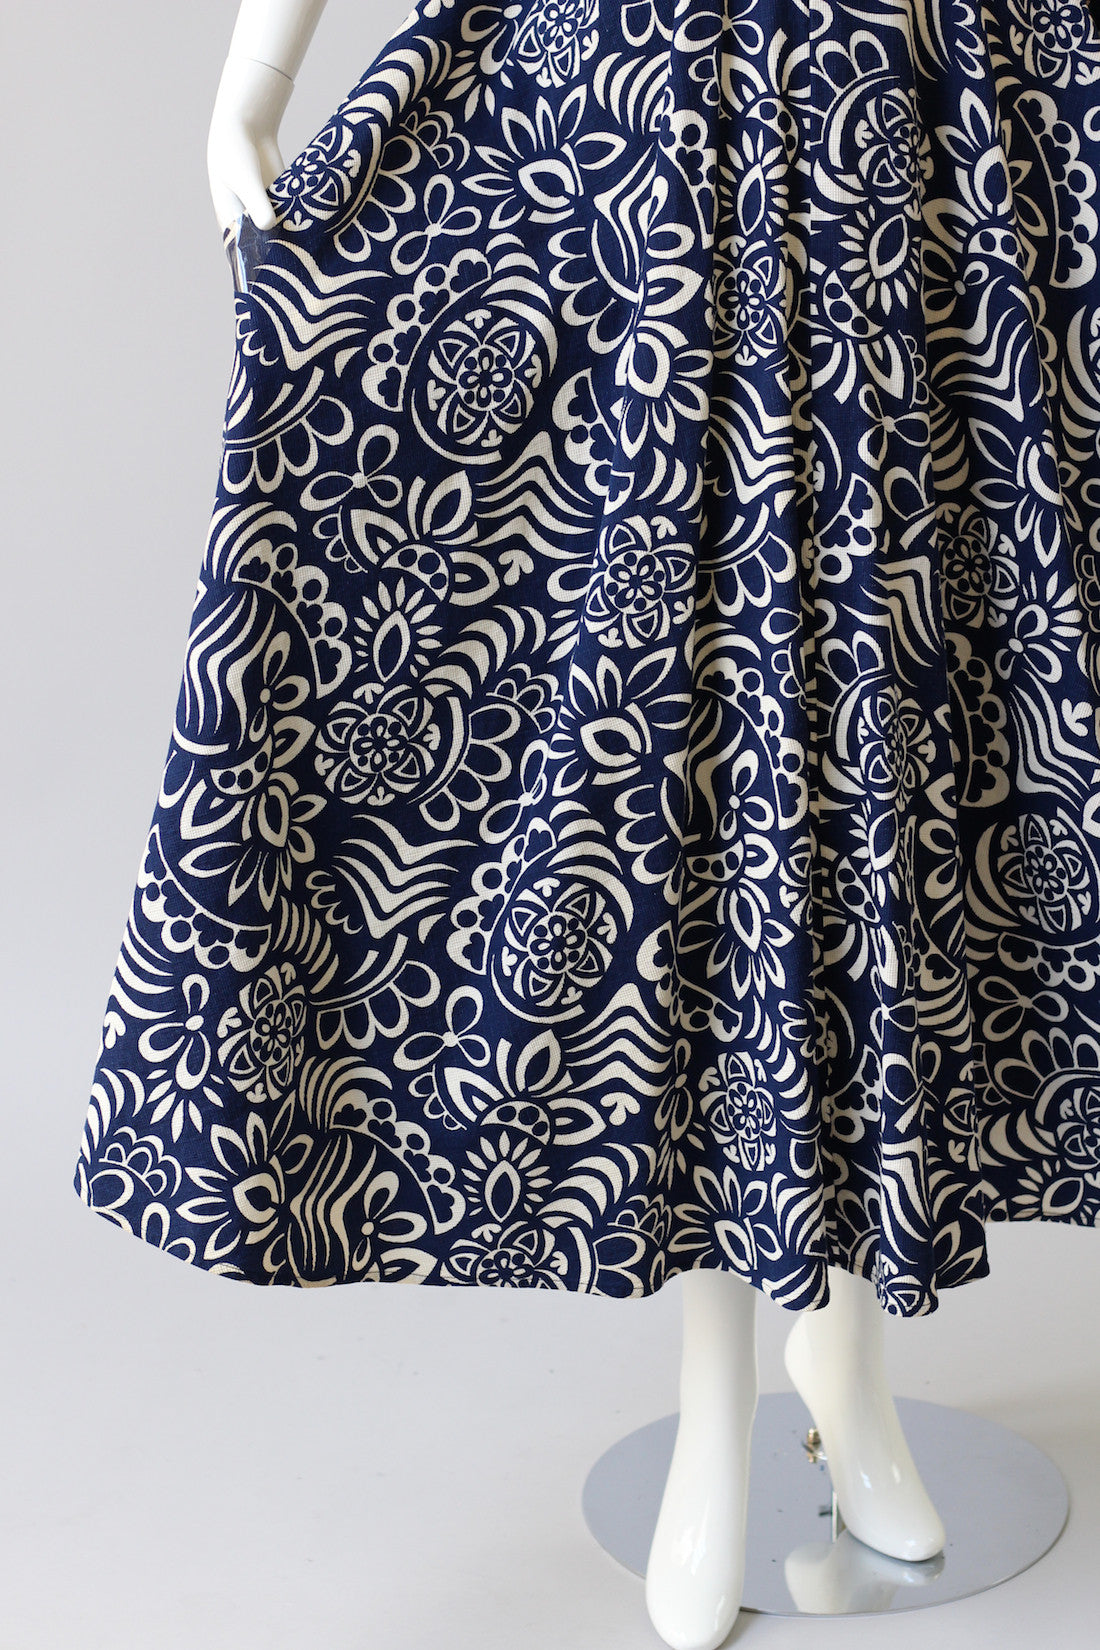 Rare 1940s Printed Cotton Pique Beach Dress